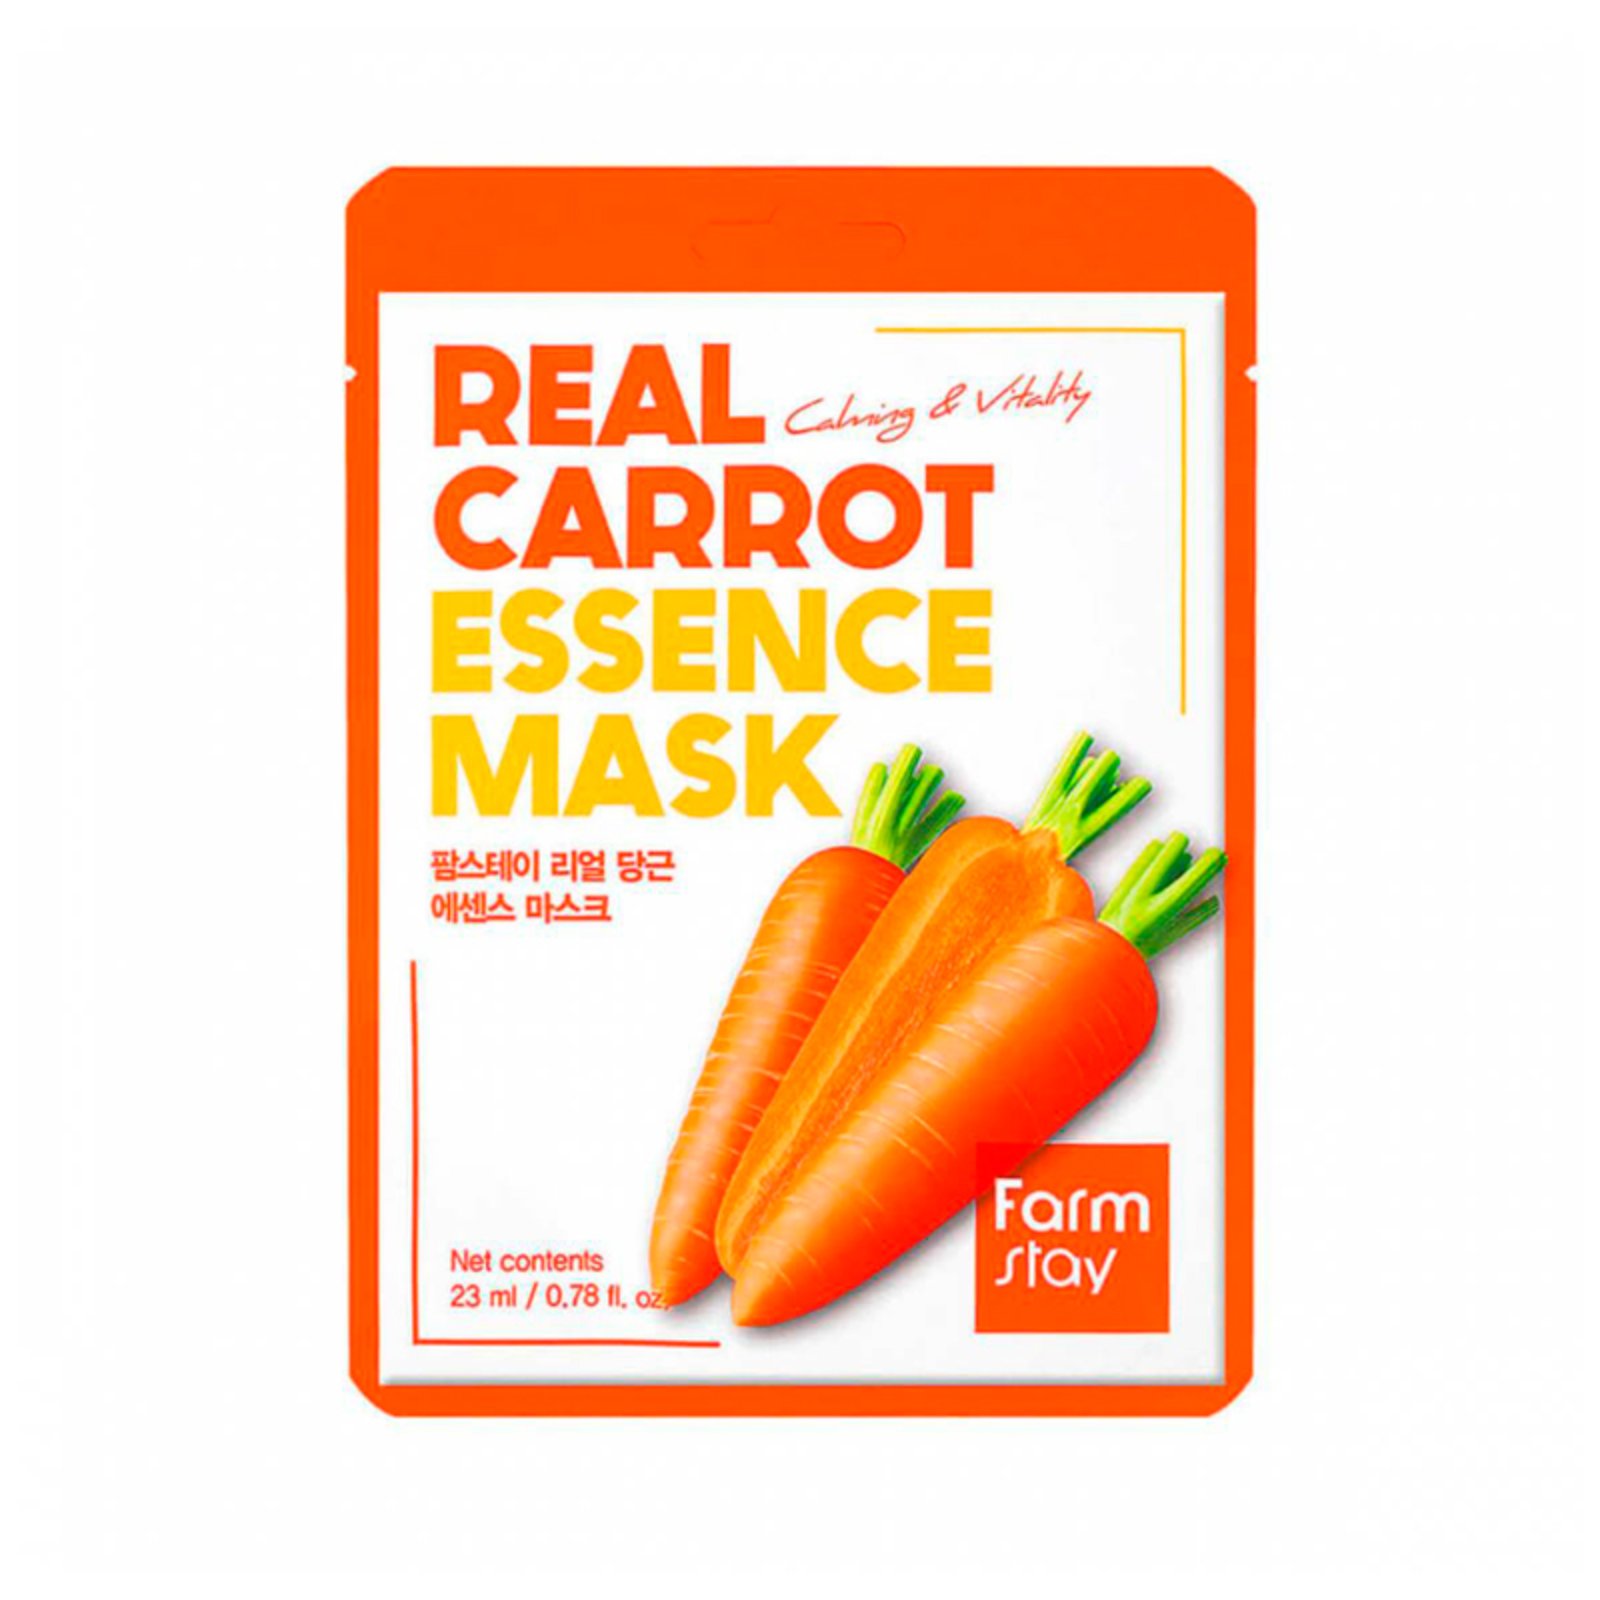 Маска для лица FarmStay успокаивающая, с экстрактом моркови, тканевая, 23 мл farmstay маска для лица тканевая с экстрактом моркови real carrot essence mask